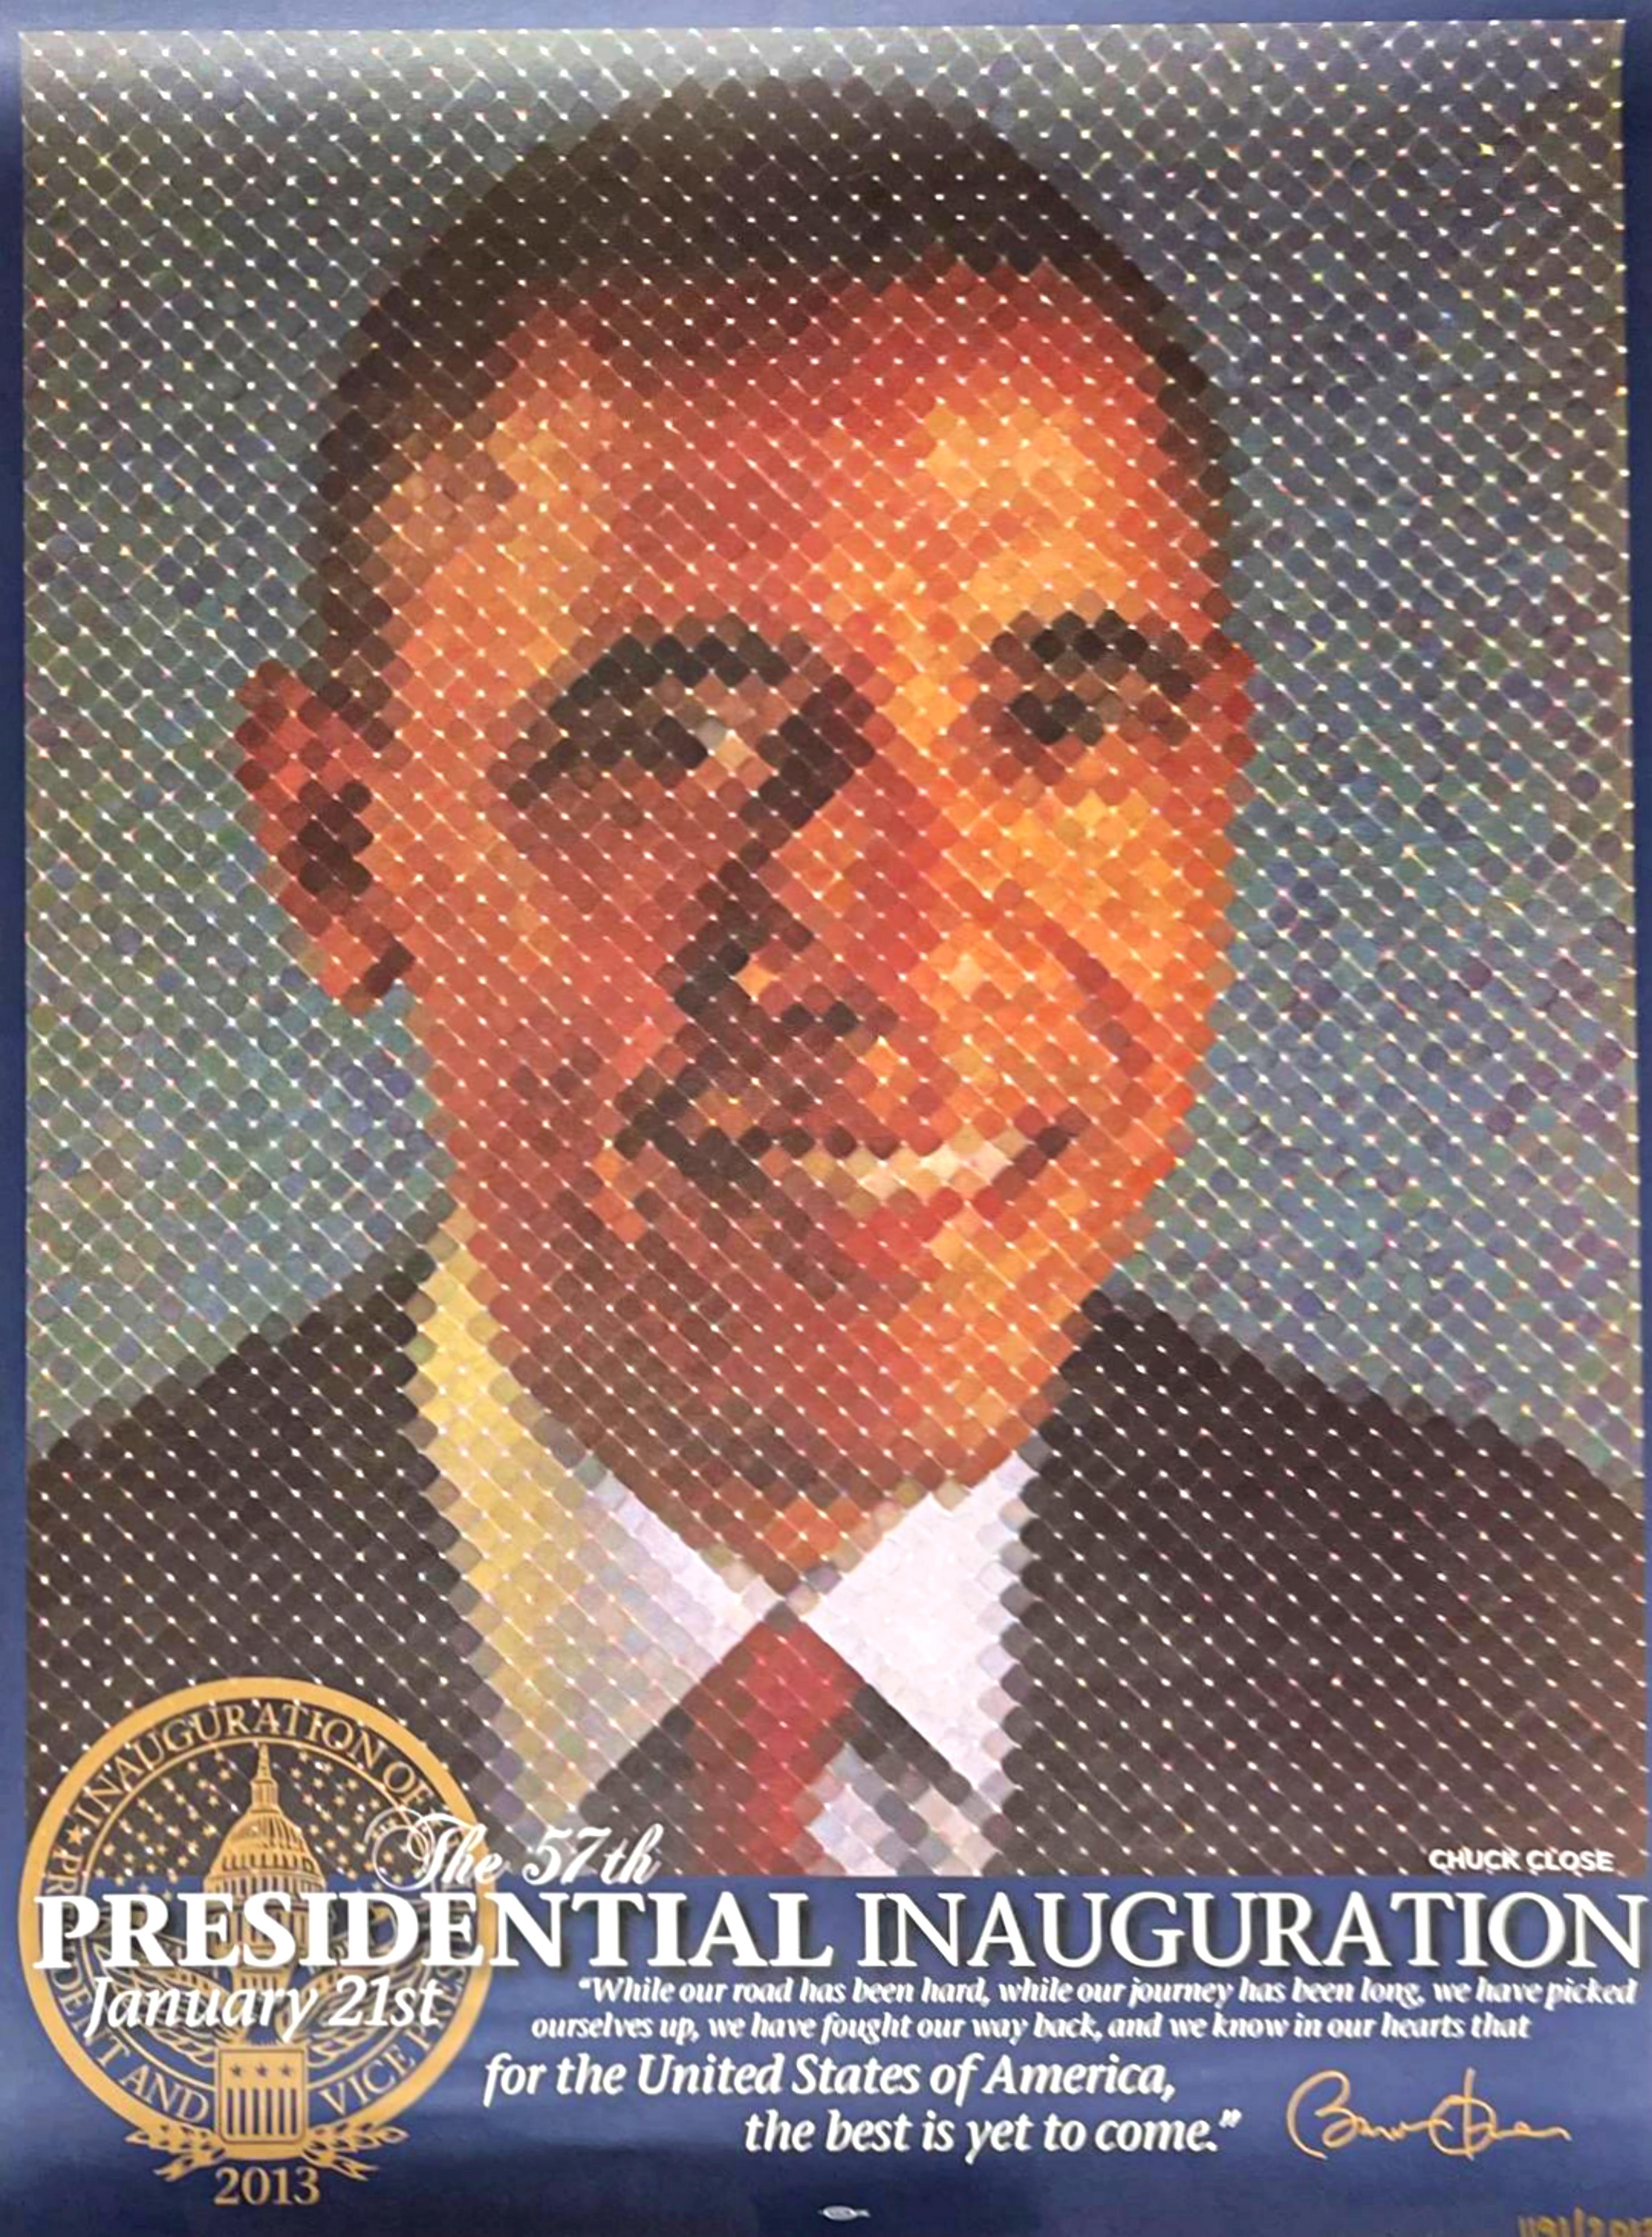 Abstract Print Chuck Close - La 57e inauguration présidentielle, édition limitée, plaque signée Barack Obama 